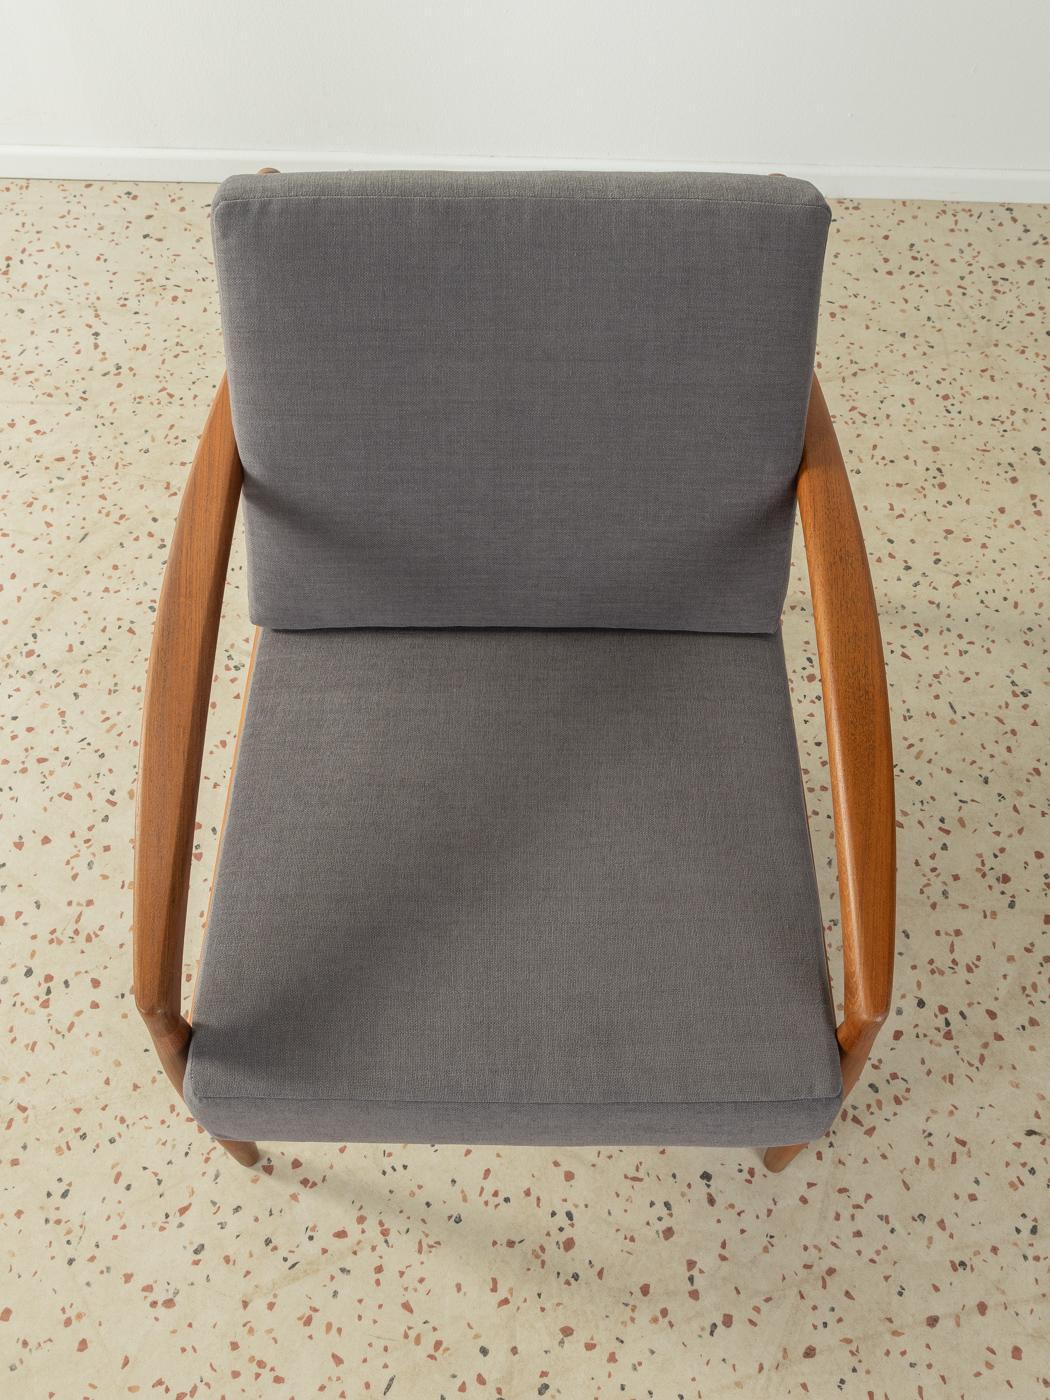 Upholstery Paper Knife Chair by Kai Kristiansen for Magnus Olesen, Made in Denmark